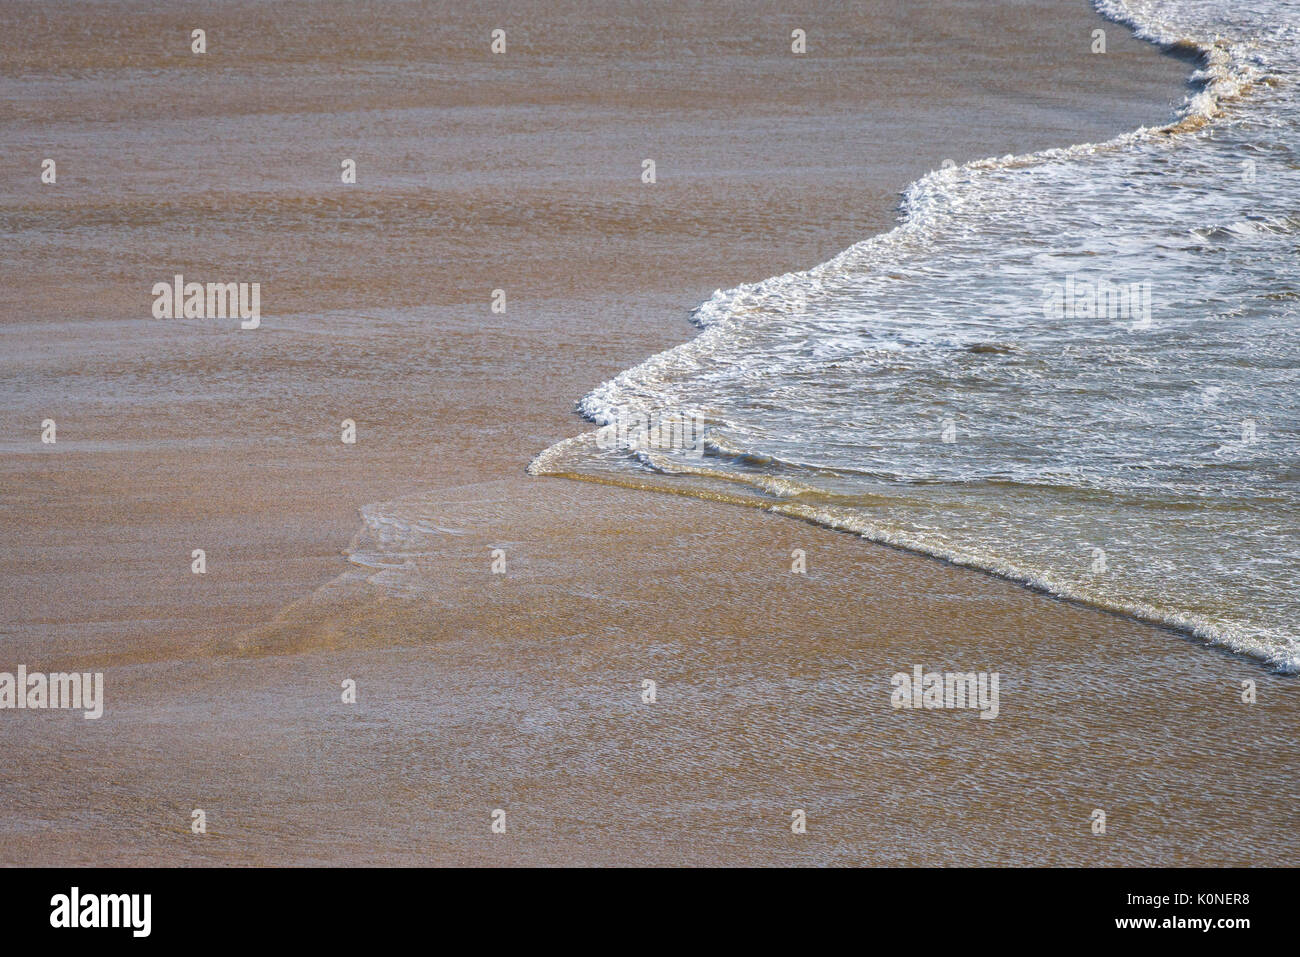 Marea entrante en una playa desierta. Foto de stock